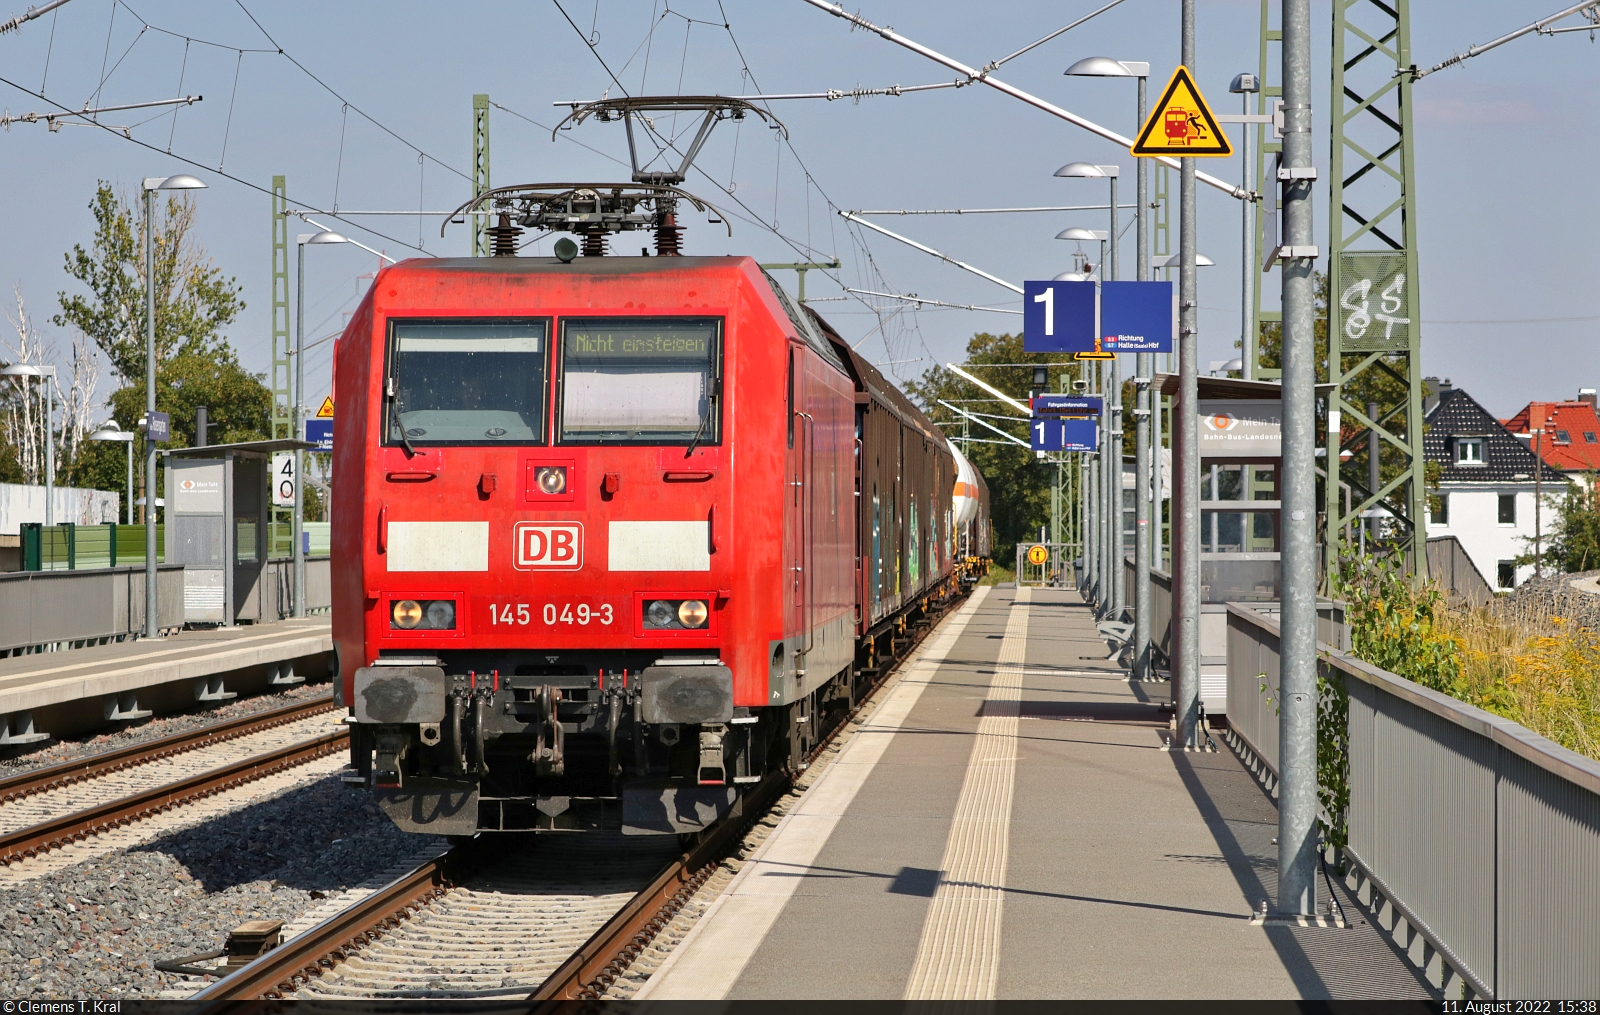 Gemischter Gz mit 145 049-3 unterwegs auf Gleis 1 des Hp Halle Rosengarten Richtung Sangerhausen. Zur Sicherheit steht  Nicht einsteigen  auf der Zielanzeige.

🧰 DB Cargo
🕓 11.8.2022 | 15:38 Uhr